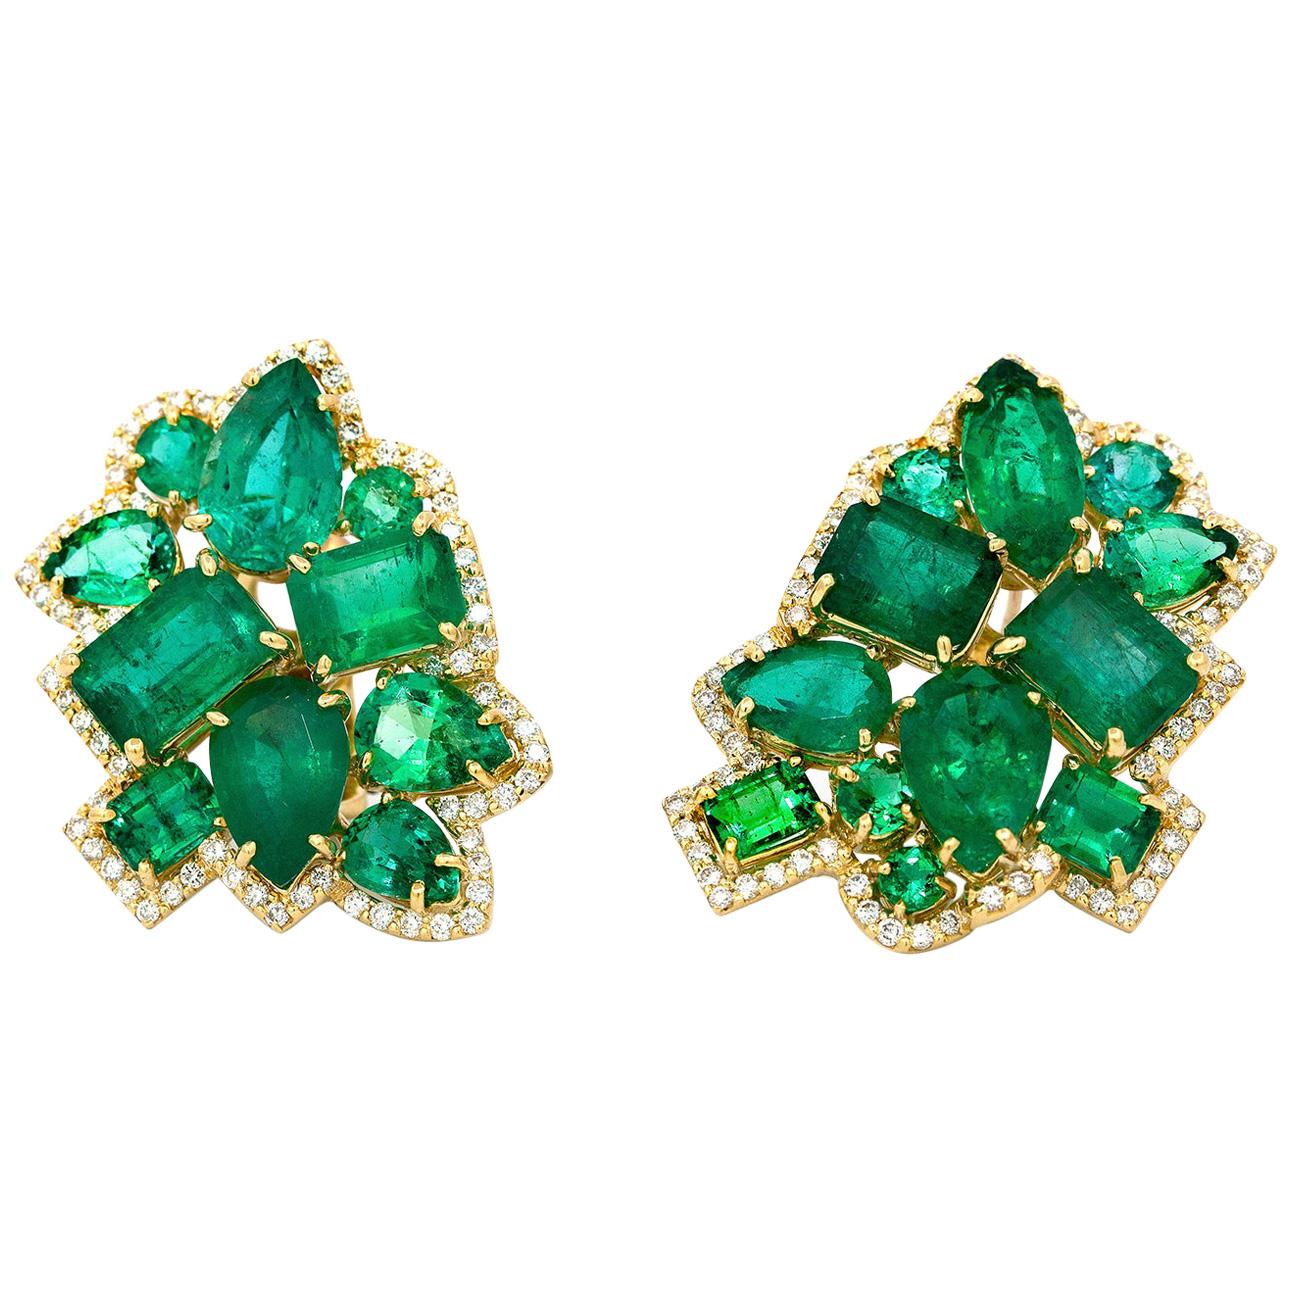 Vintage-Smaragde in modernem Vintage-Stil, gefasst in französische 18 Karat Gold Clip-Ohrringe